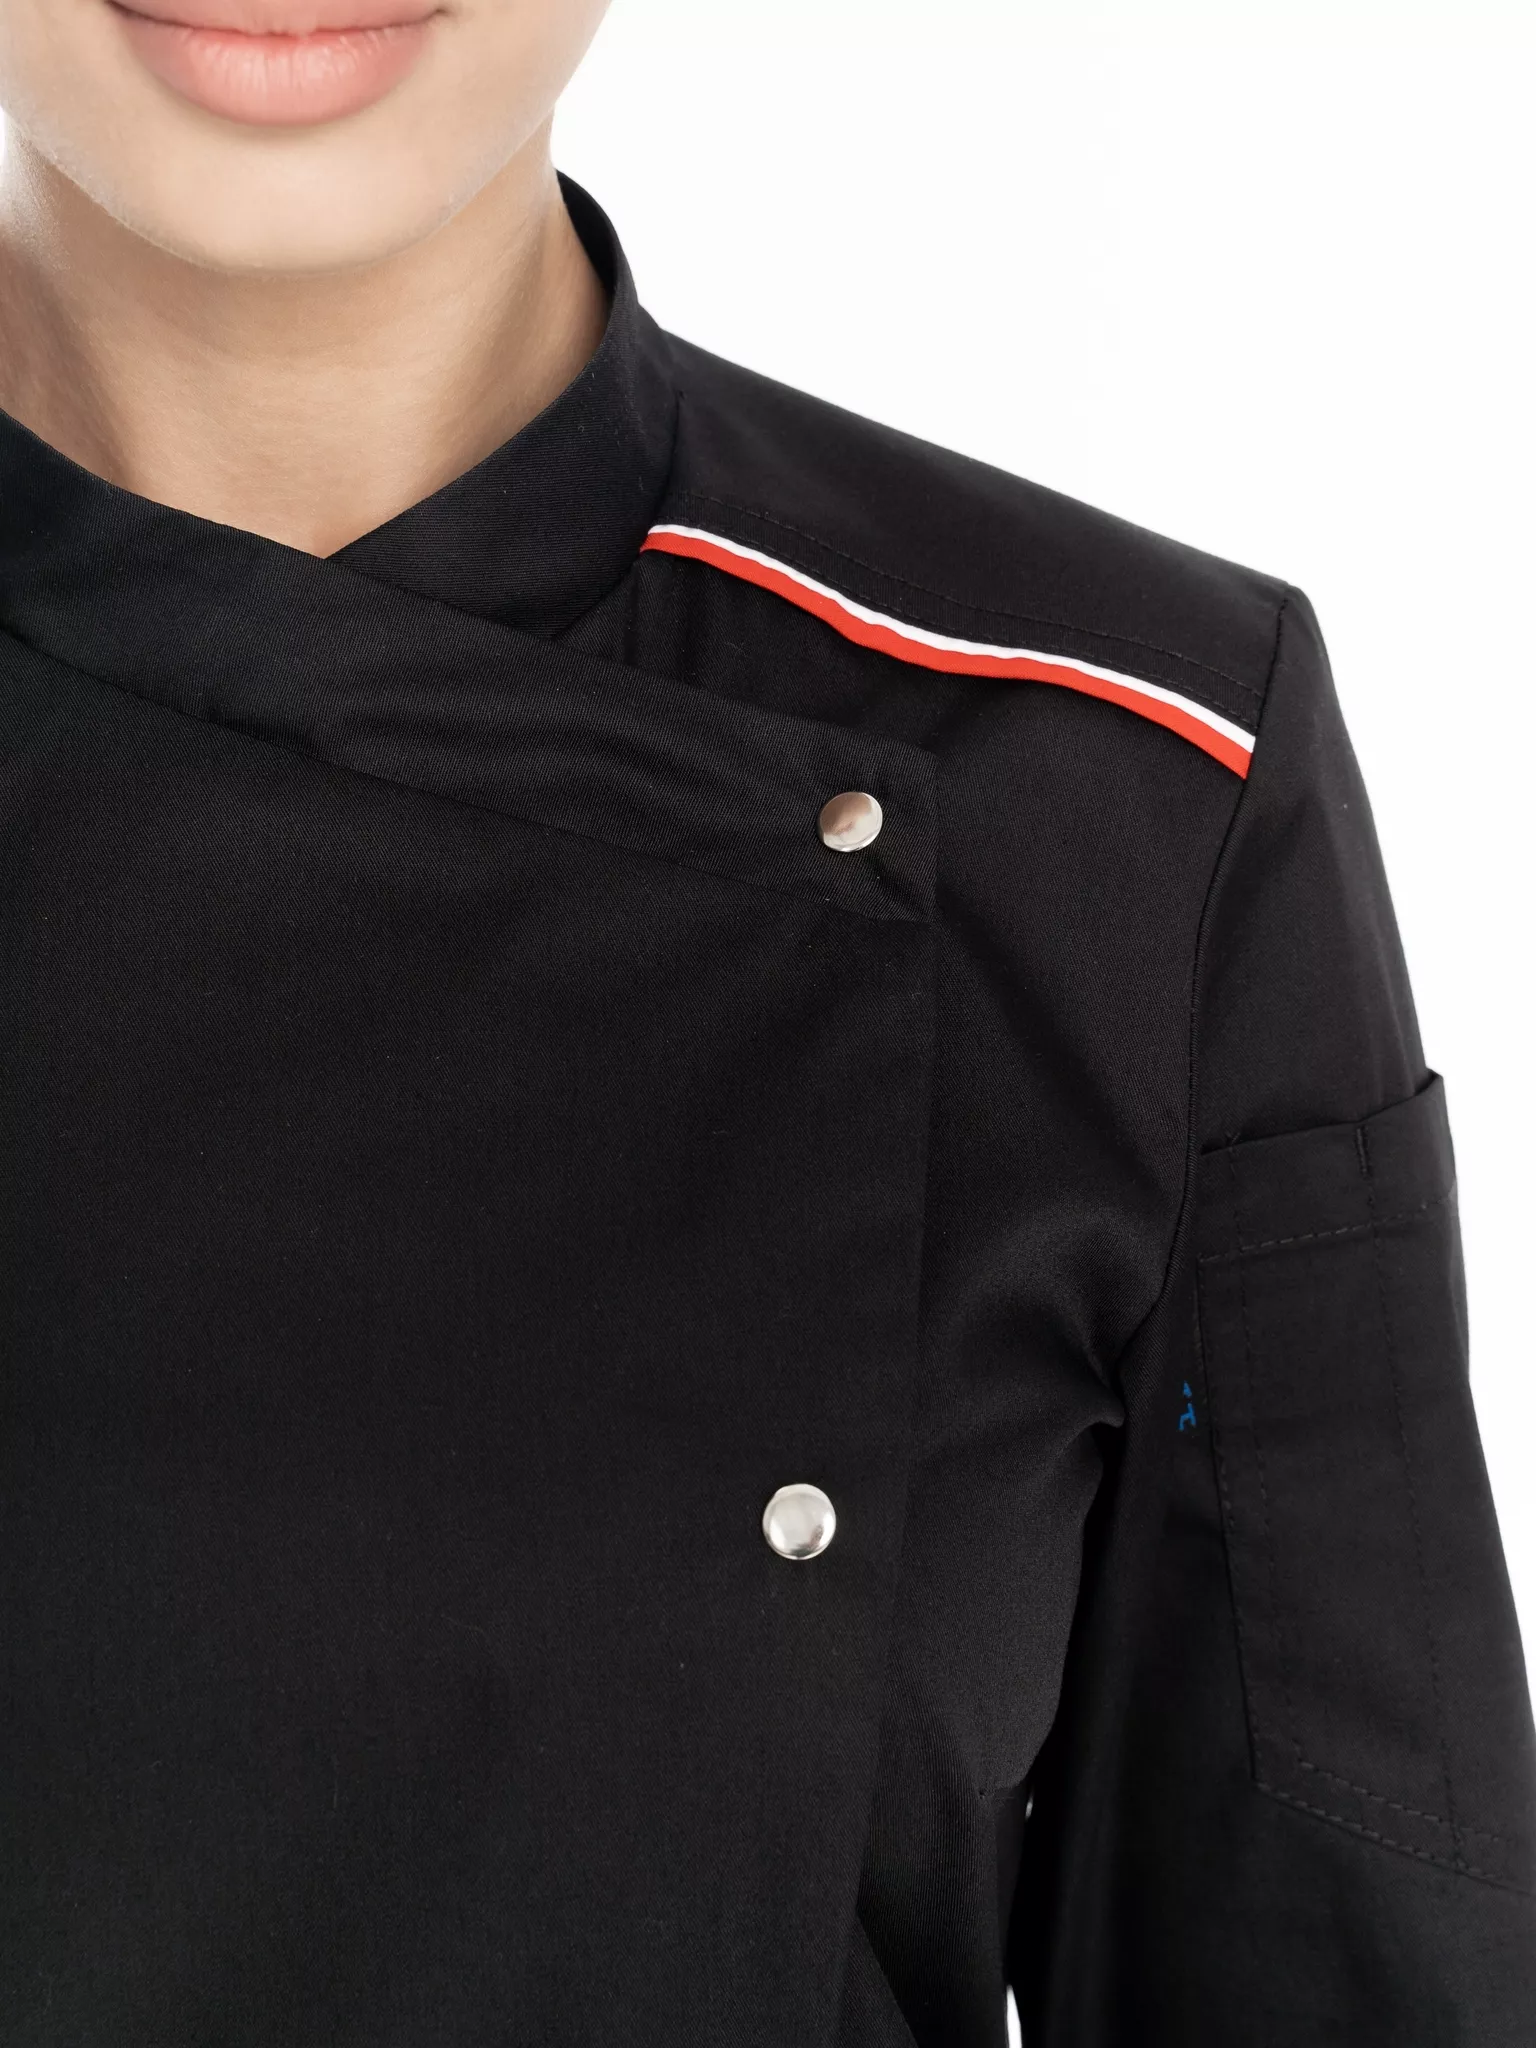 Куртка повара женская КМ.591 р.48-50, рост 158-164 (цвет черный, кант красный, белый)